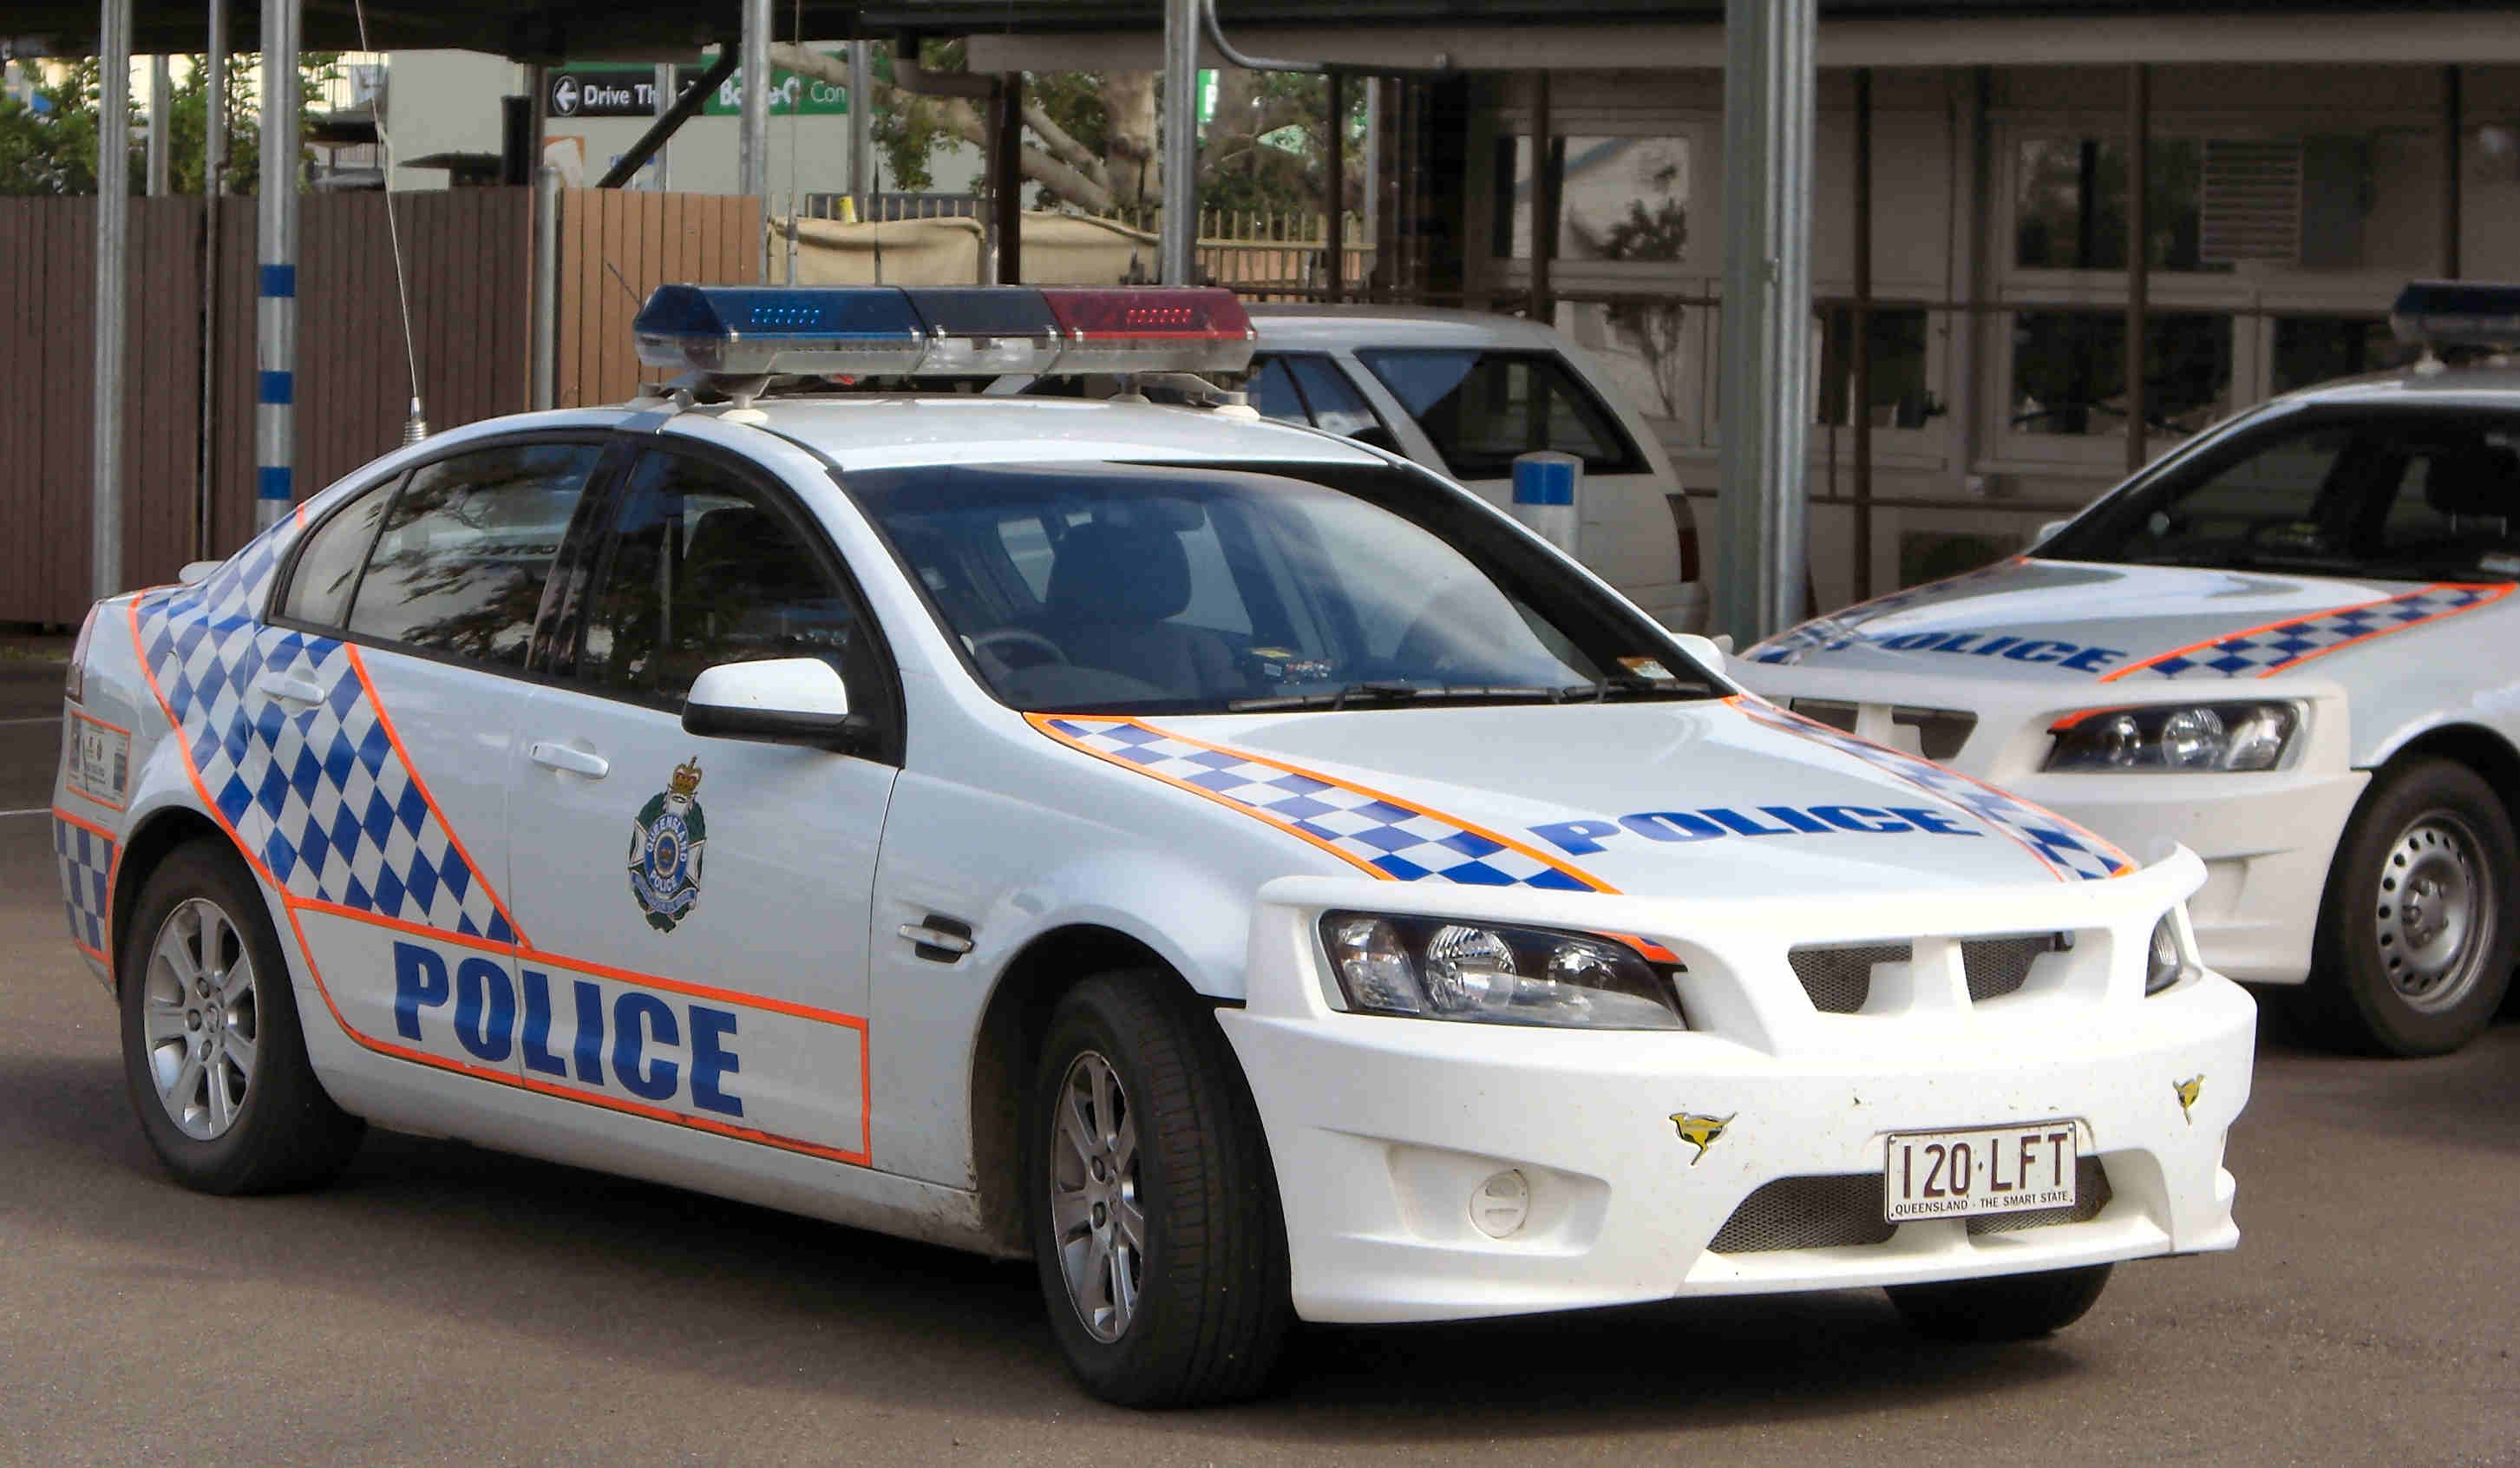 Police cars - Longreach